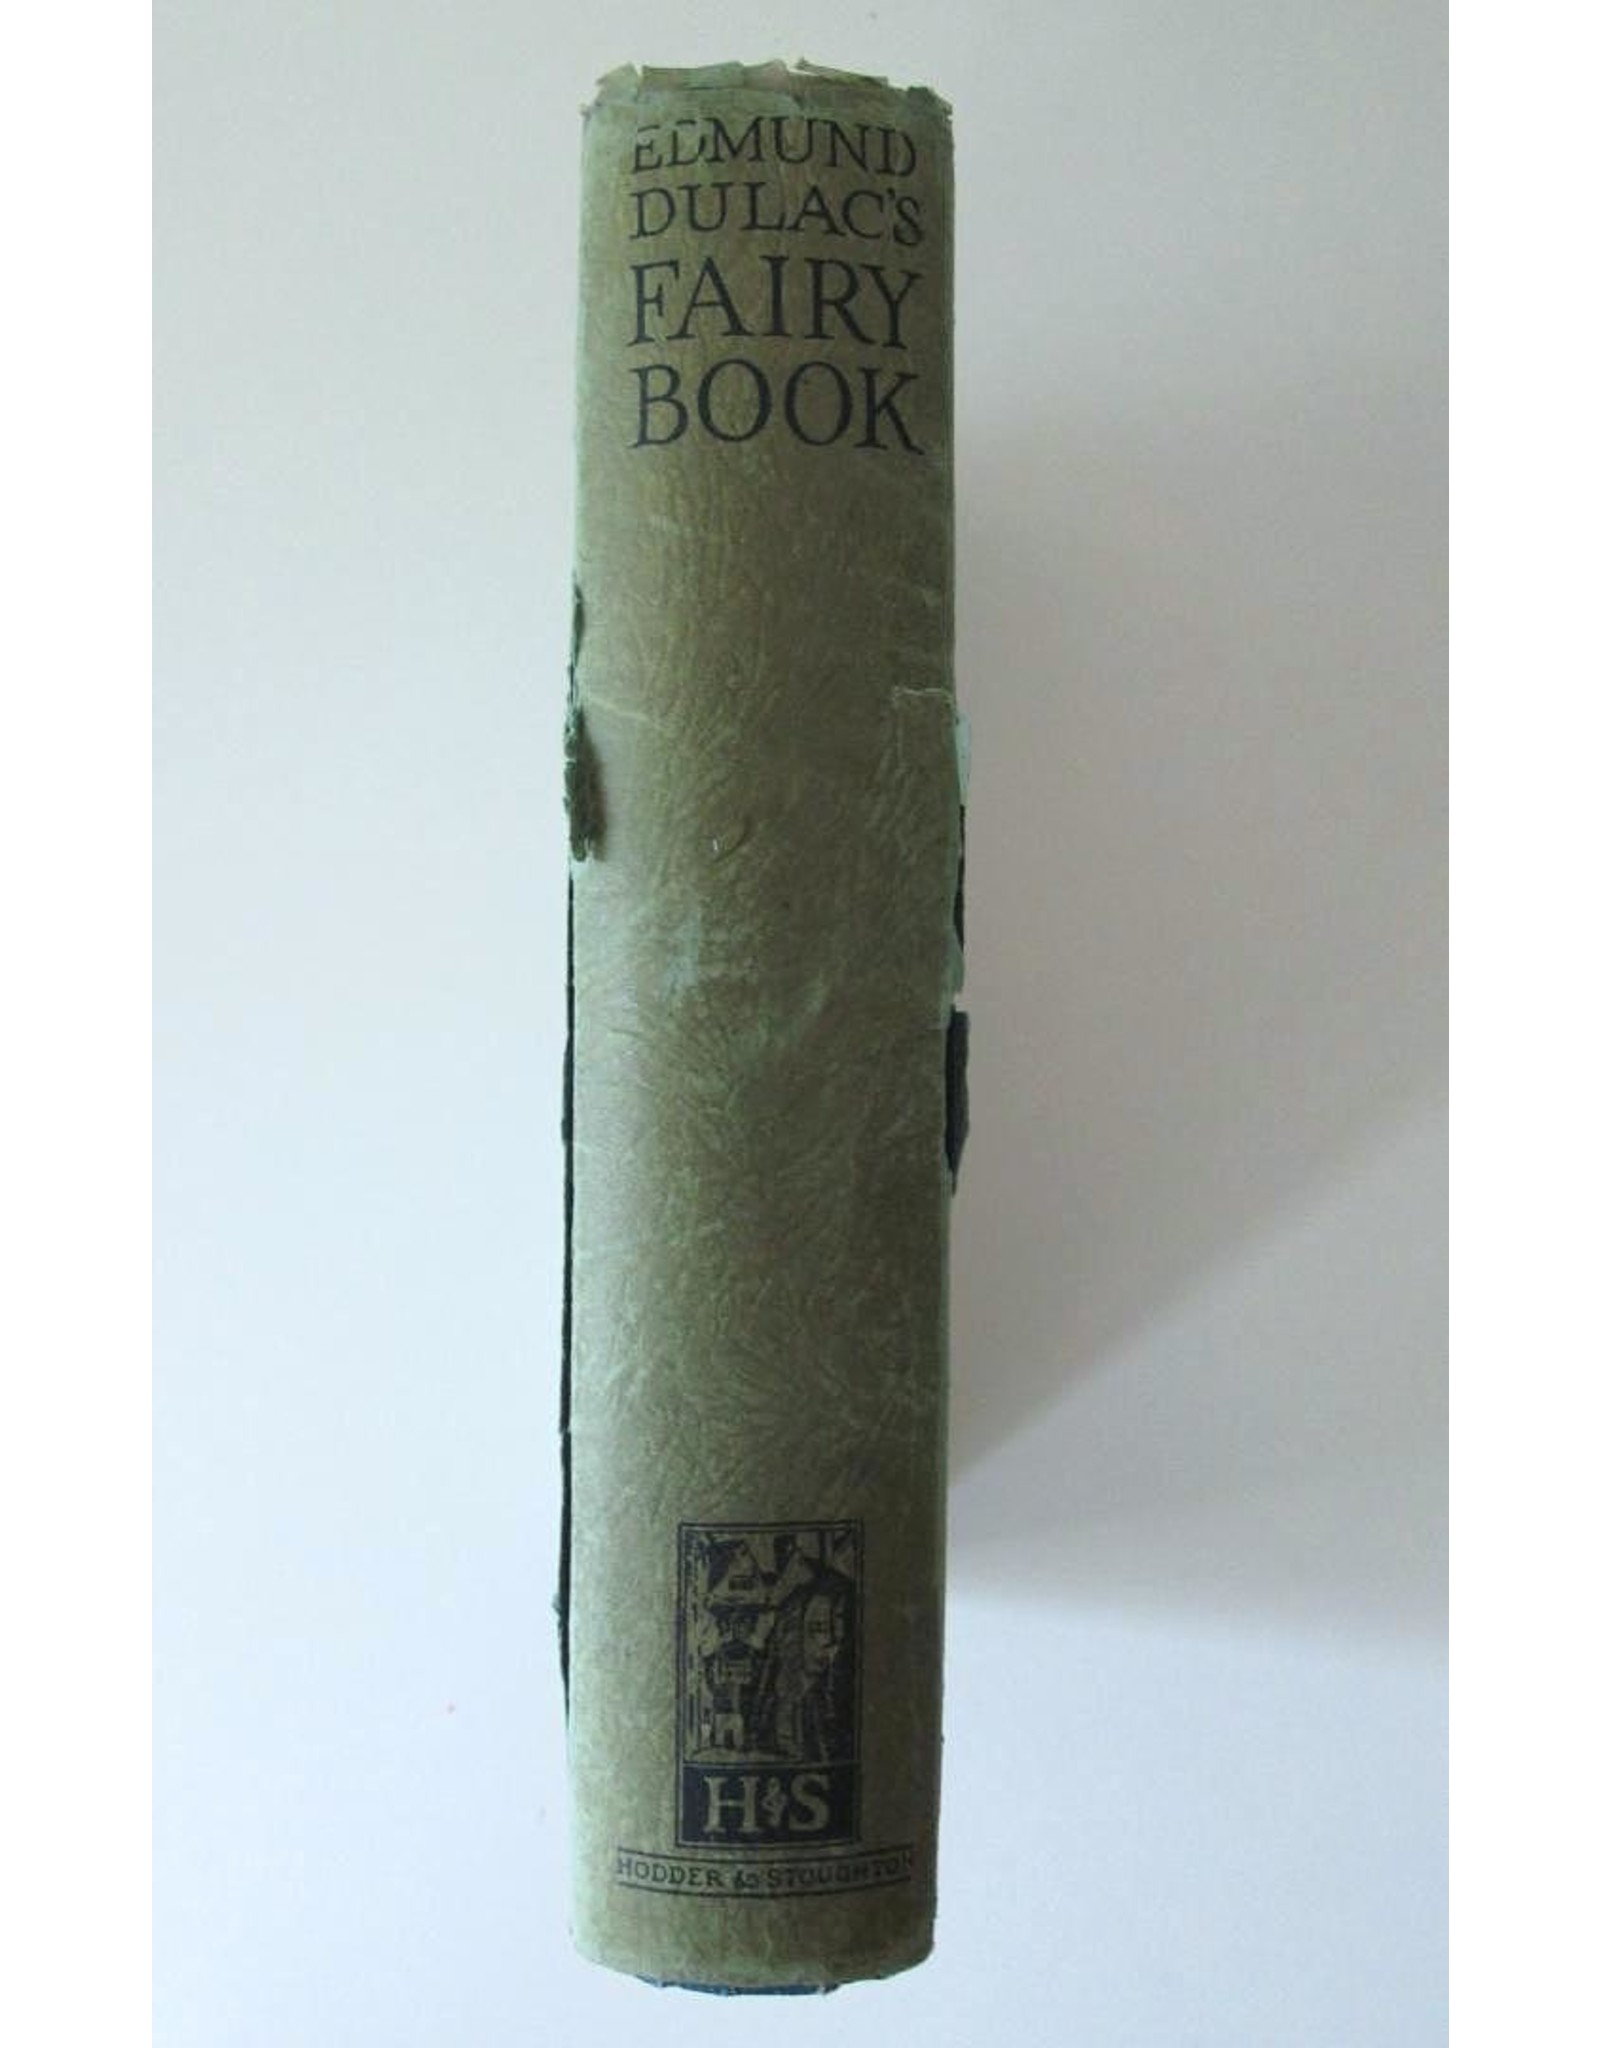 Edmund Dulac - Edmund Dulac's Fairy Book: Fairy Tales